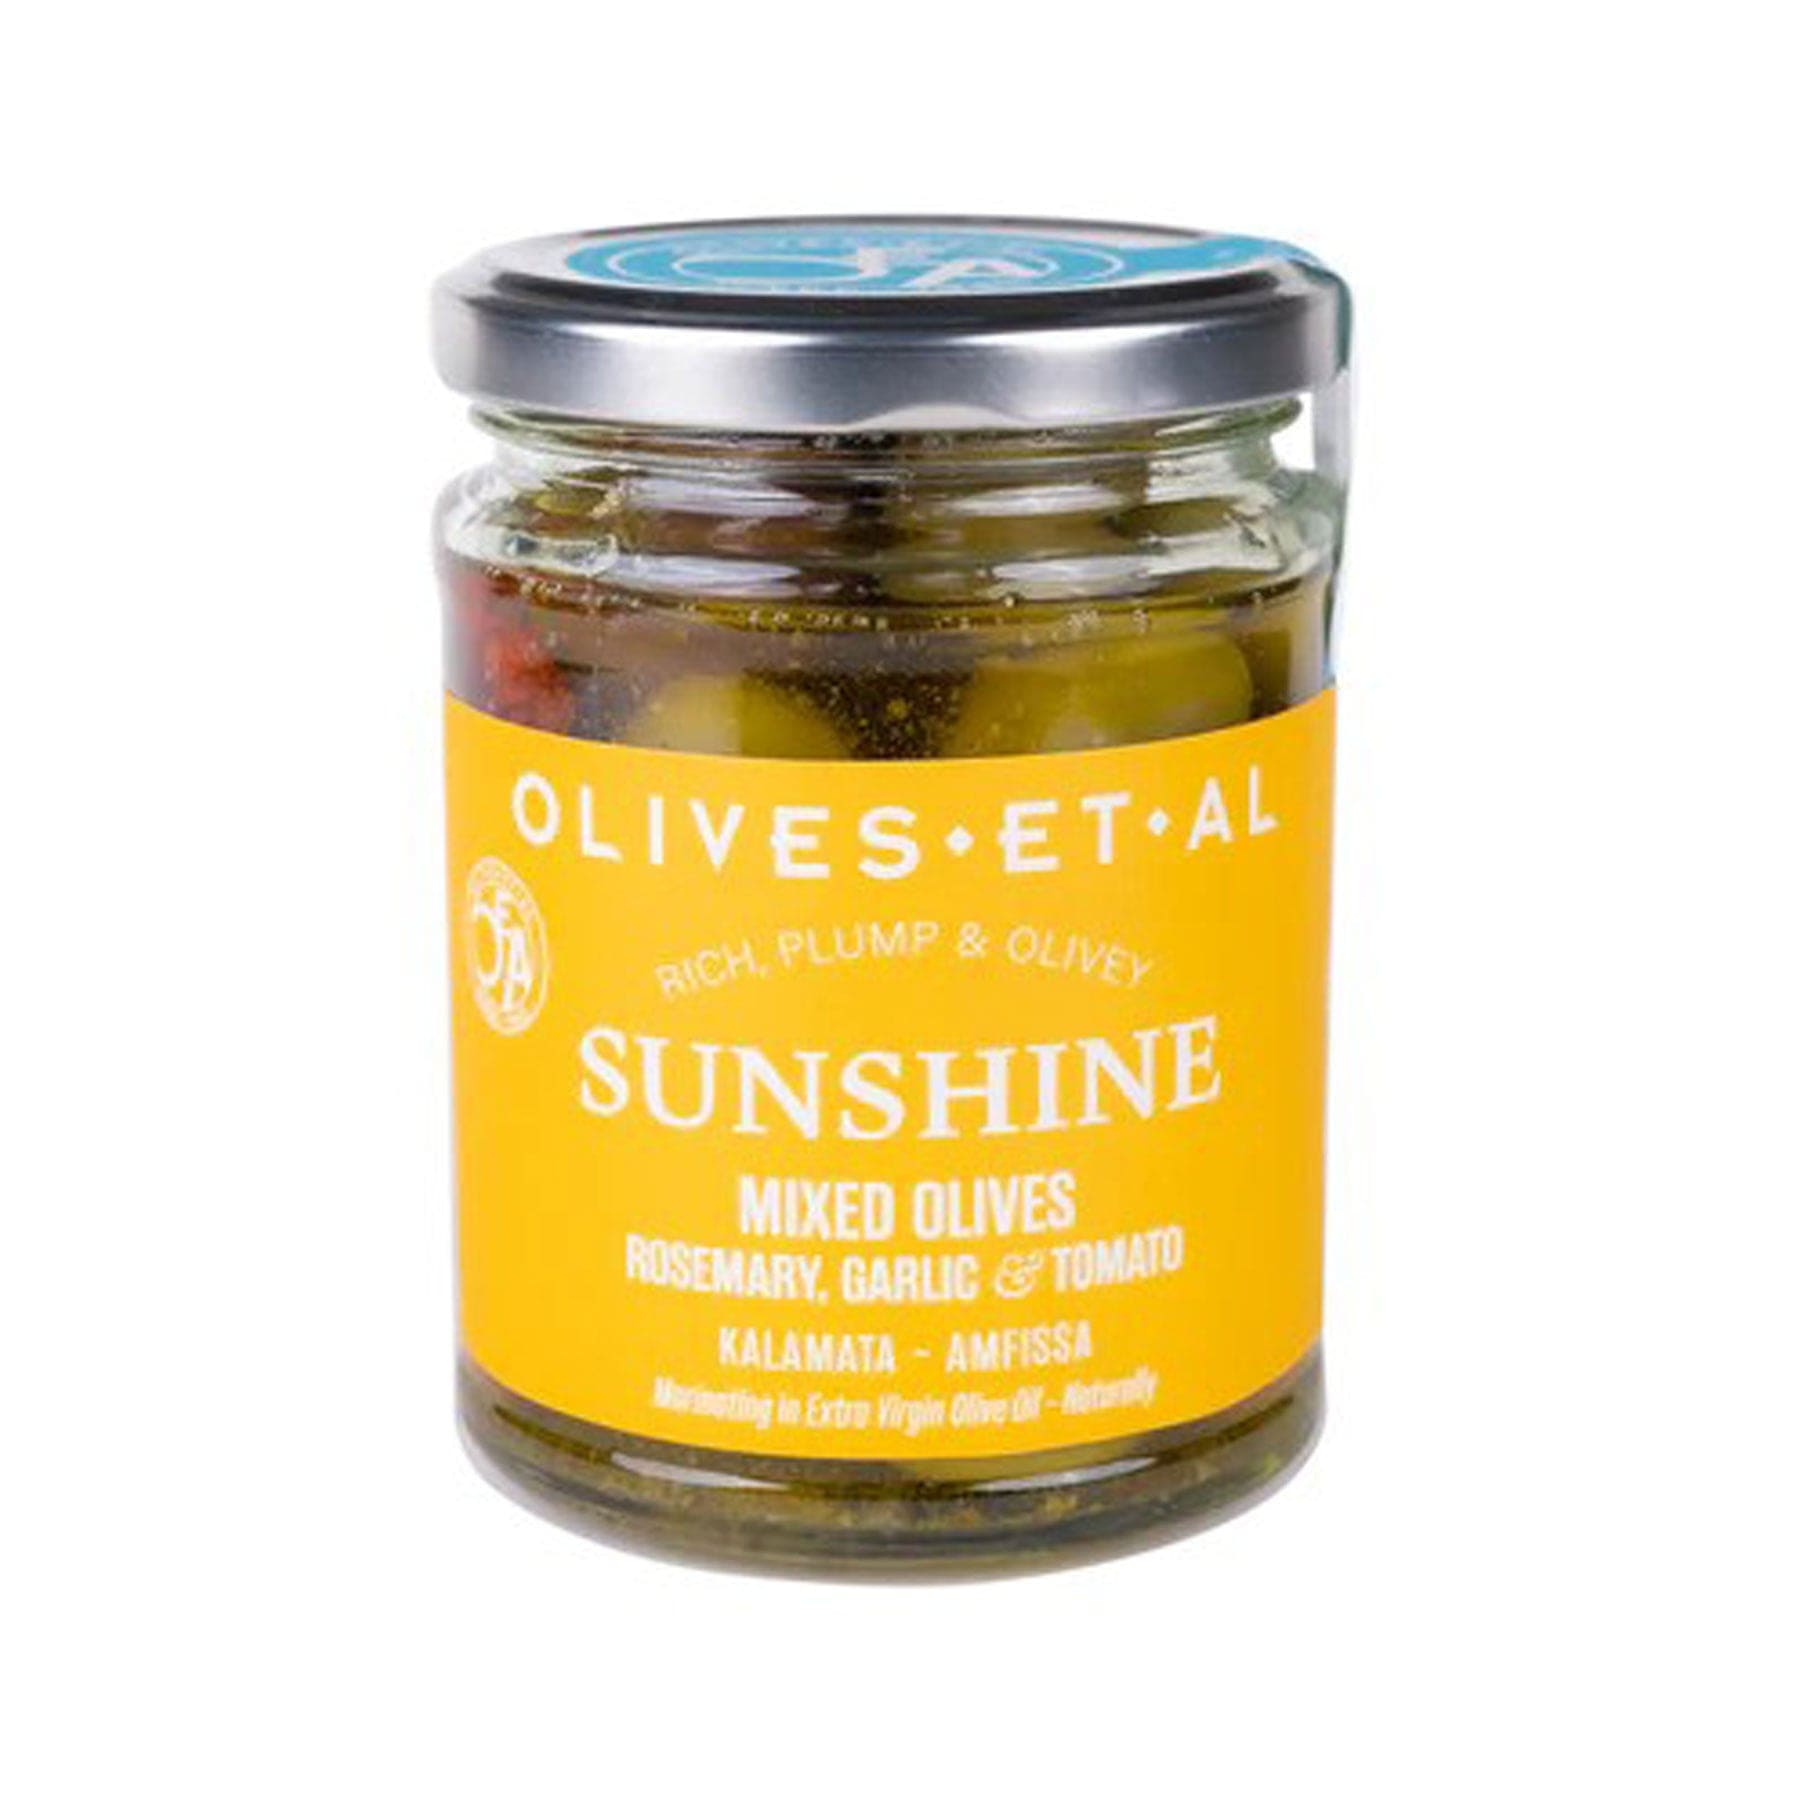 Sunshine rosemary & garlic olives 250g